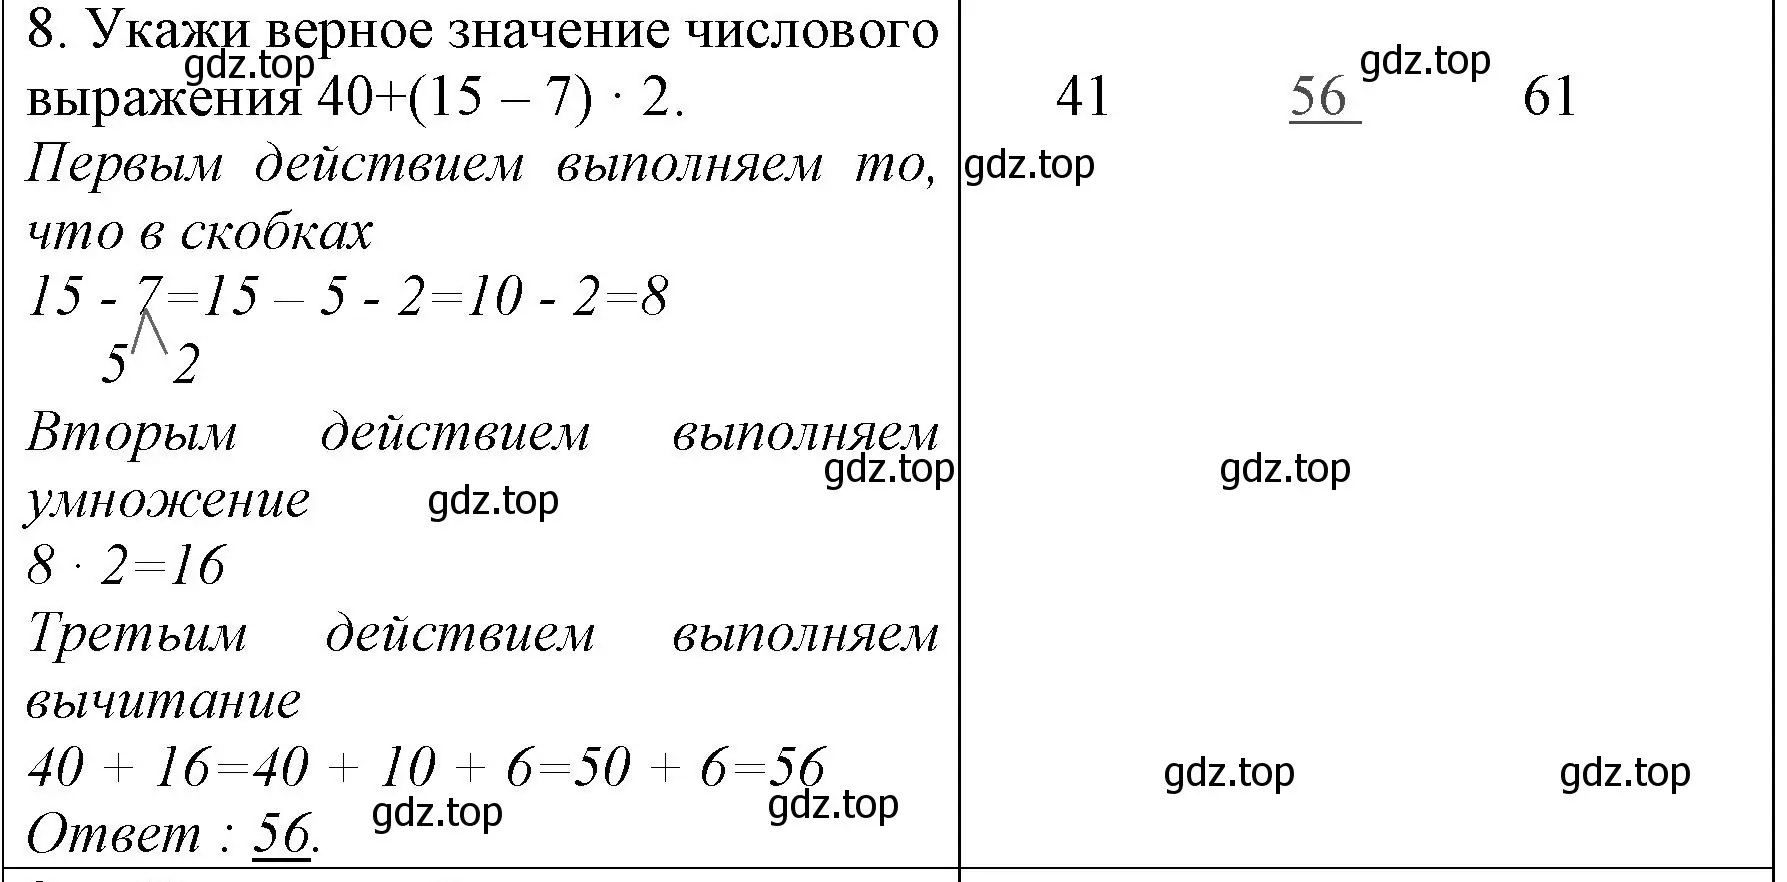 Решение номер 8 (страница 30) гдз по математике 3 класс Моро, Бантова, учебник 1 часть